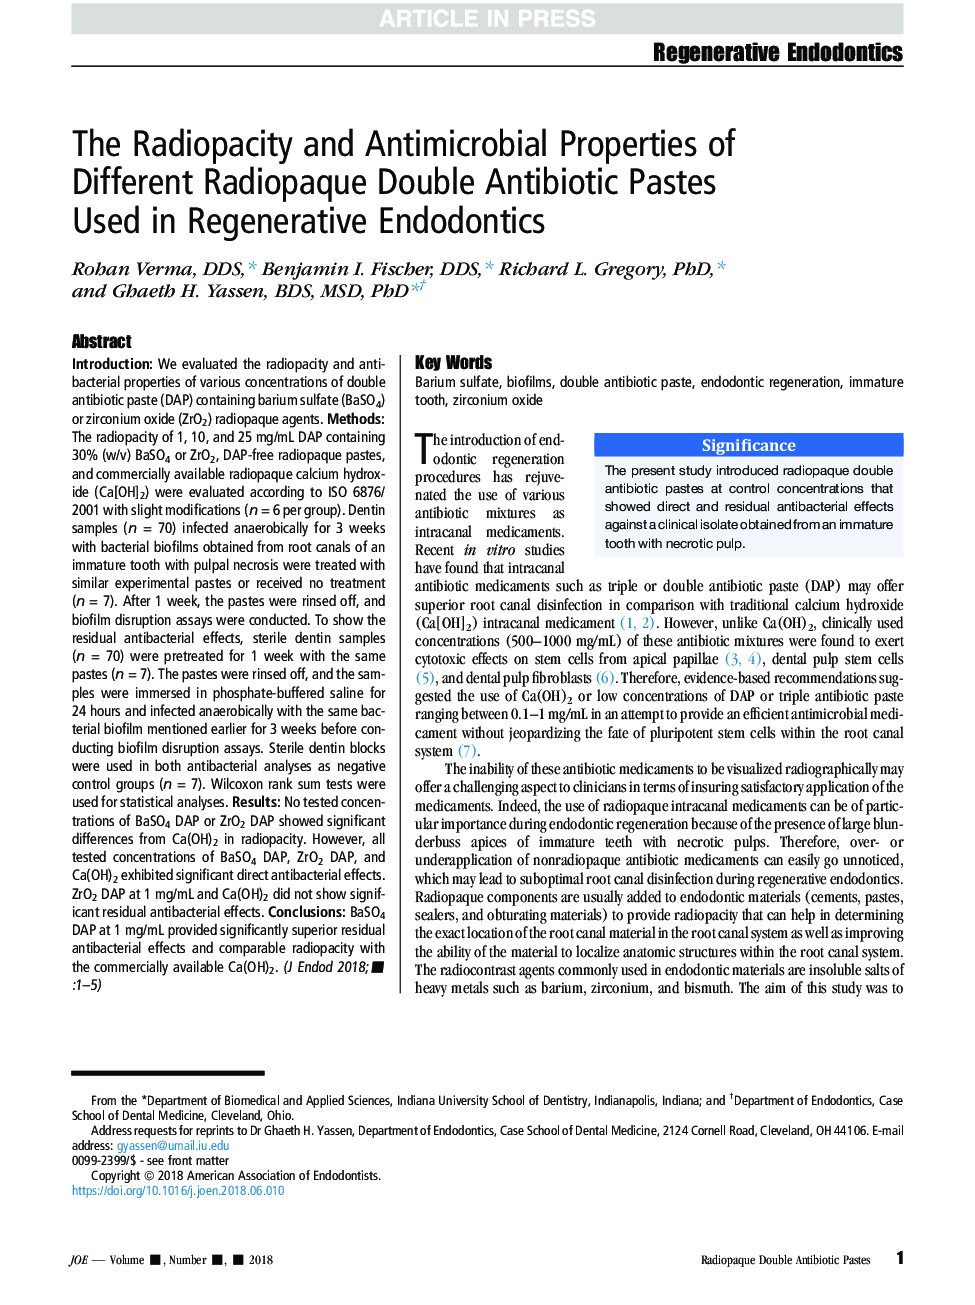 خواص رادیوپتیسیتی و ضد میکروبی پاستای آنتی بیوتیک دوبار رادیواکتیوی مورد استفاده در اندودنتیکس های رژنراتیو